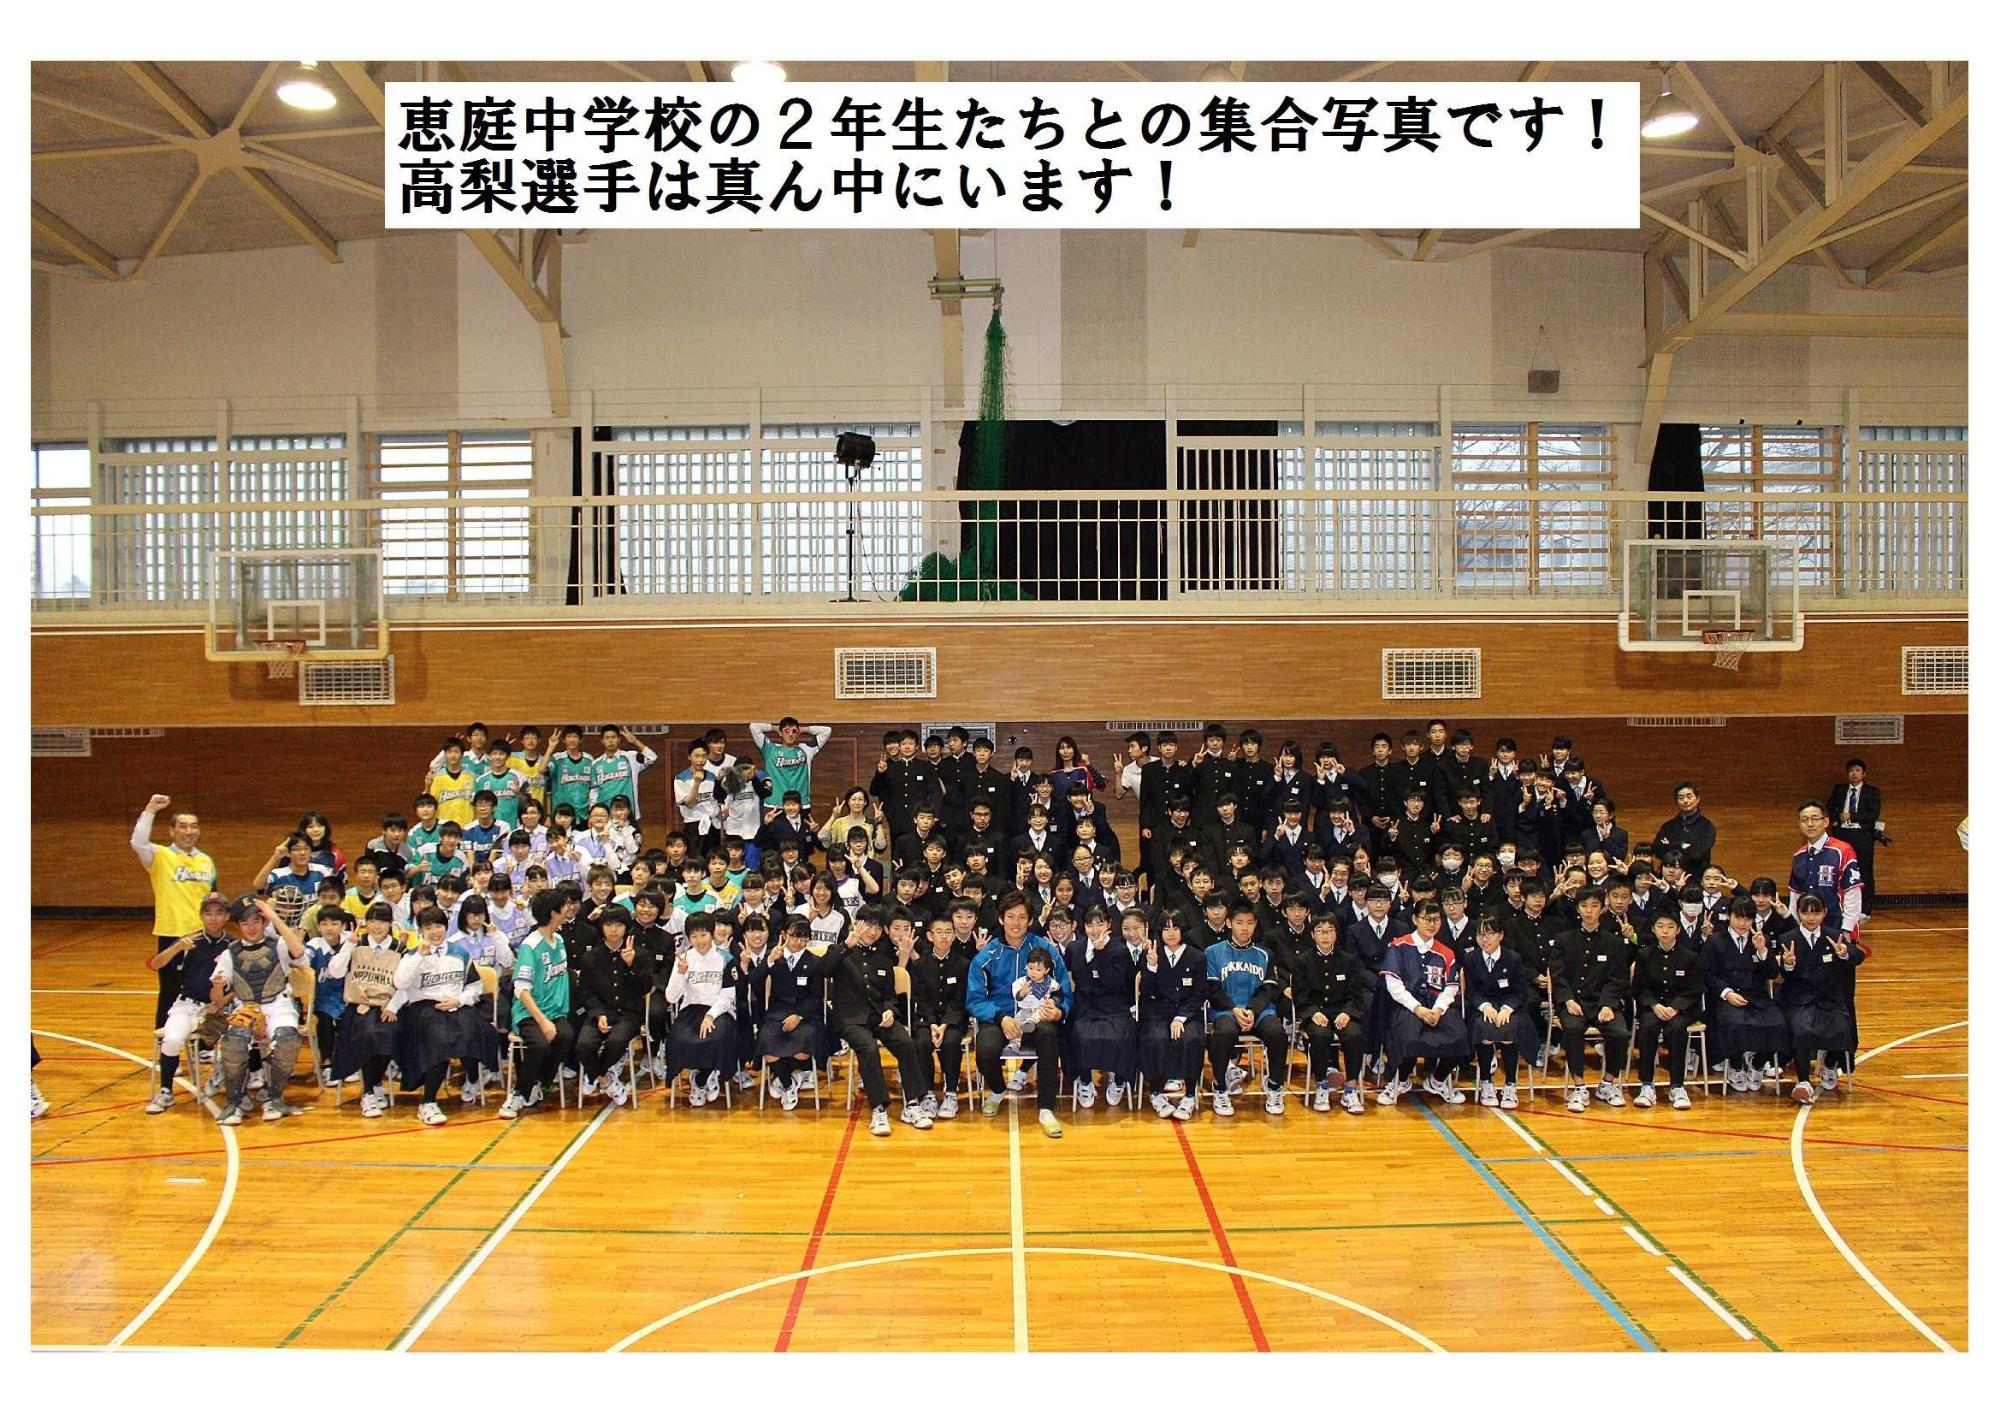 恵庭中学校の2年生たちとの集合写真です！高梨選手は真ん中にいます！